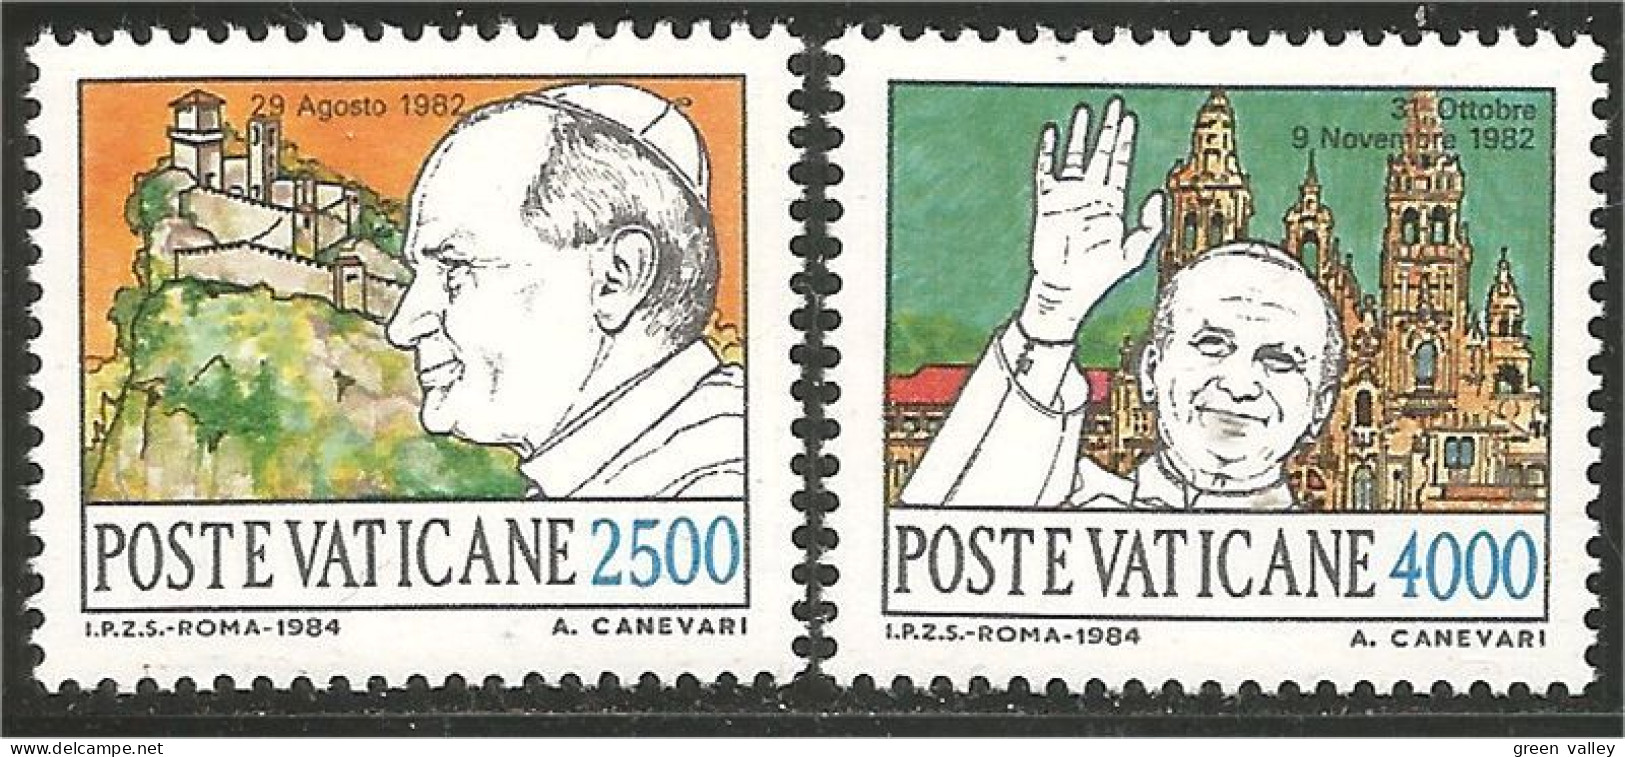 922 Vatican 1984 Voyages Pape Pope Travels High Values Hautes Valeurs MNH ** Neuf SC (VAT-132) - Papas